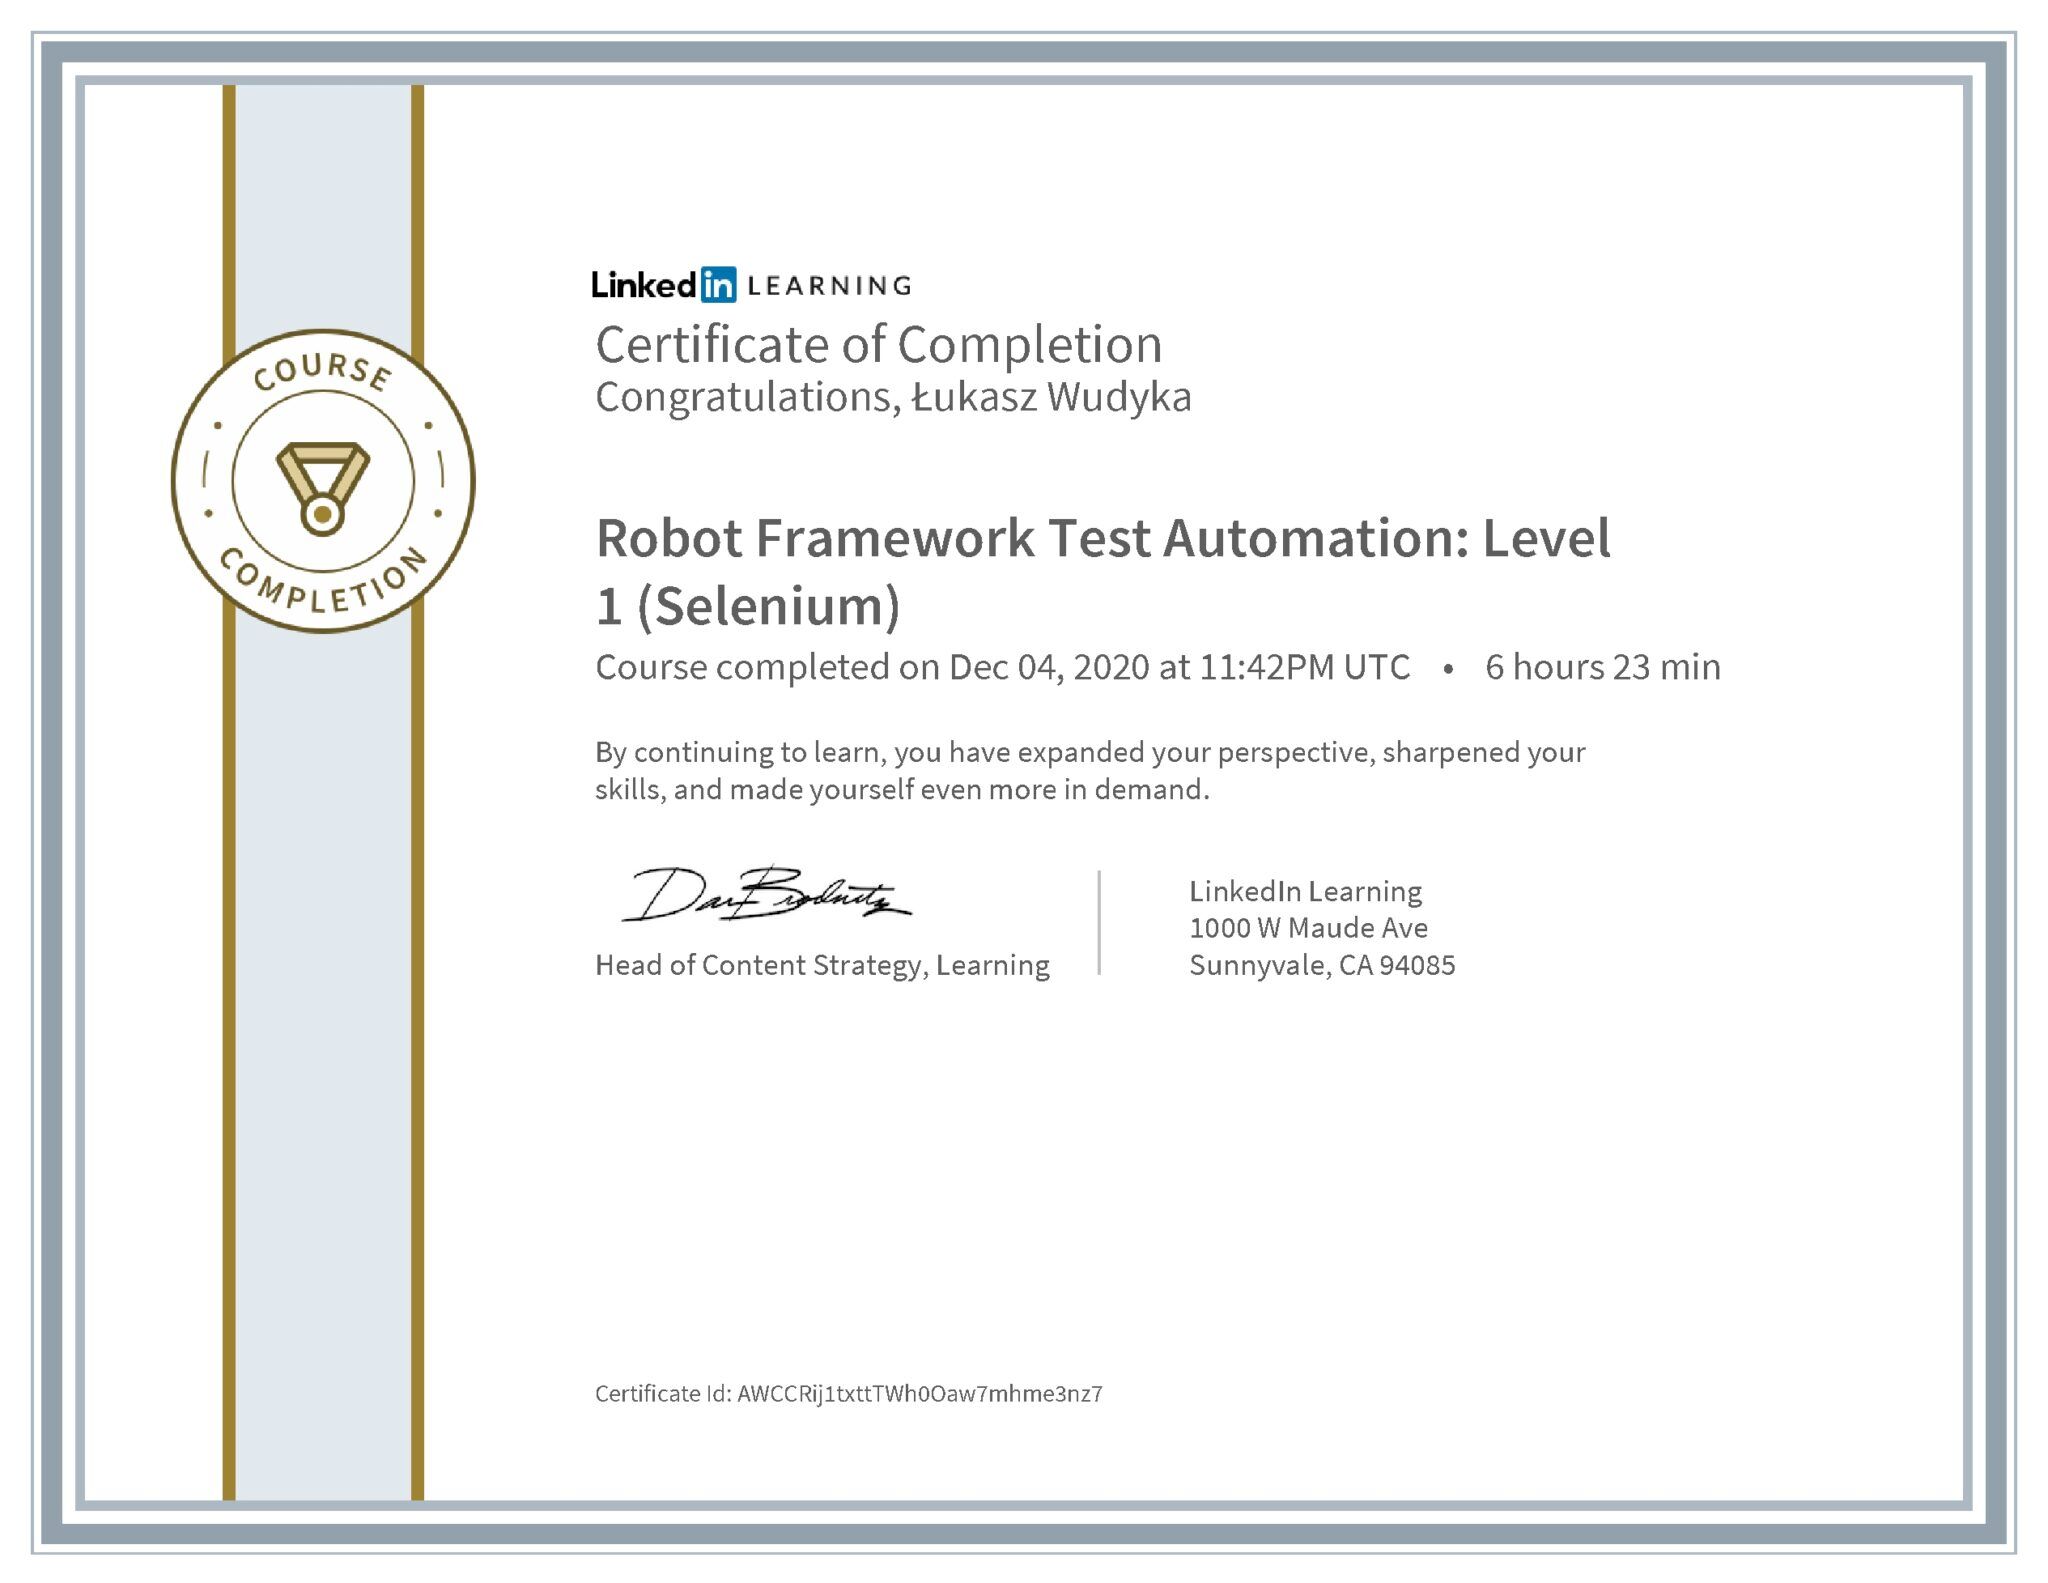 Łukasz Wudyka certyfikat LinkedIn Robot Framework Test Automation: Level 1 (Selenium)